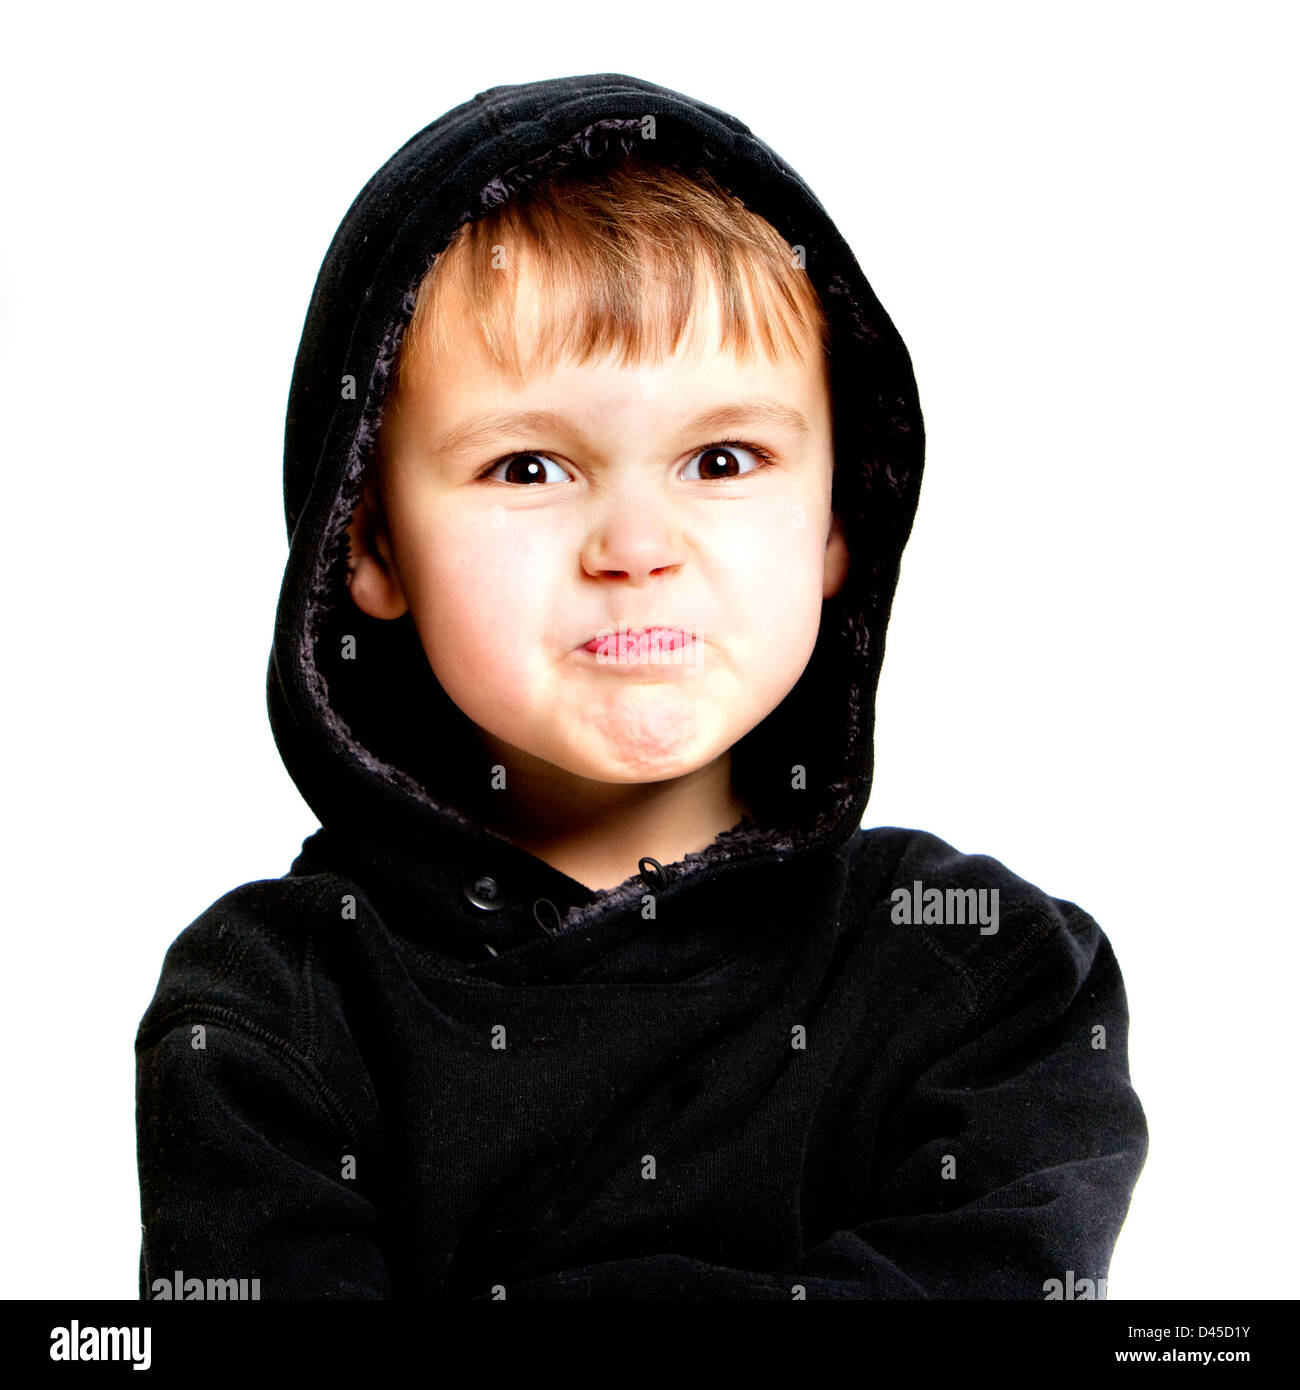 Fünf Jahre alter Junge in einem schwarzen Hoodie Sweatshirt mit fahlen Haut braune Haare und braune Augen vor einem weißen Hintergrund. Stockfoto